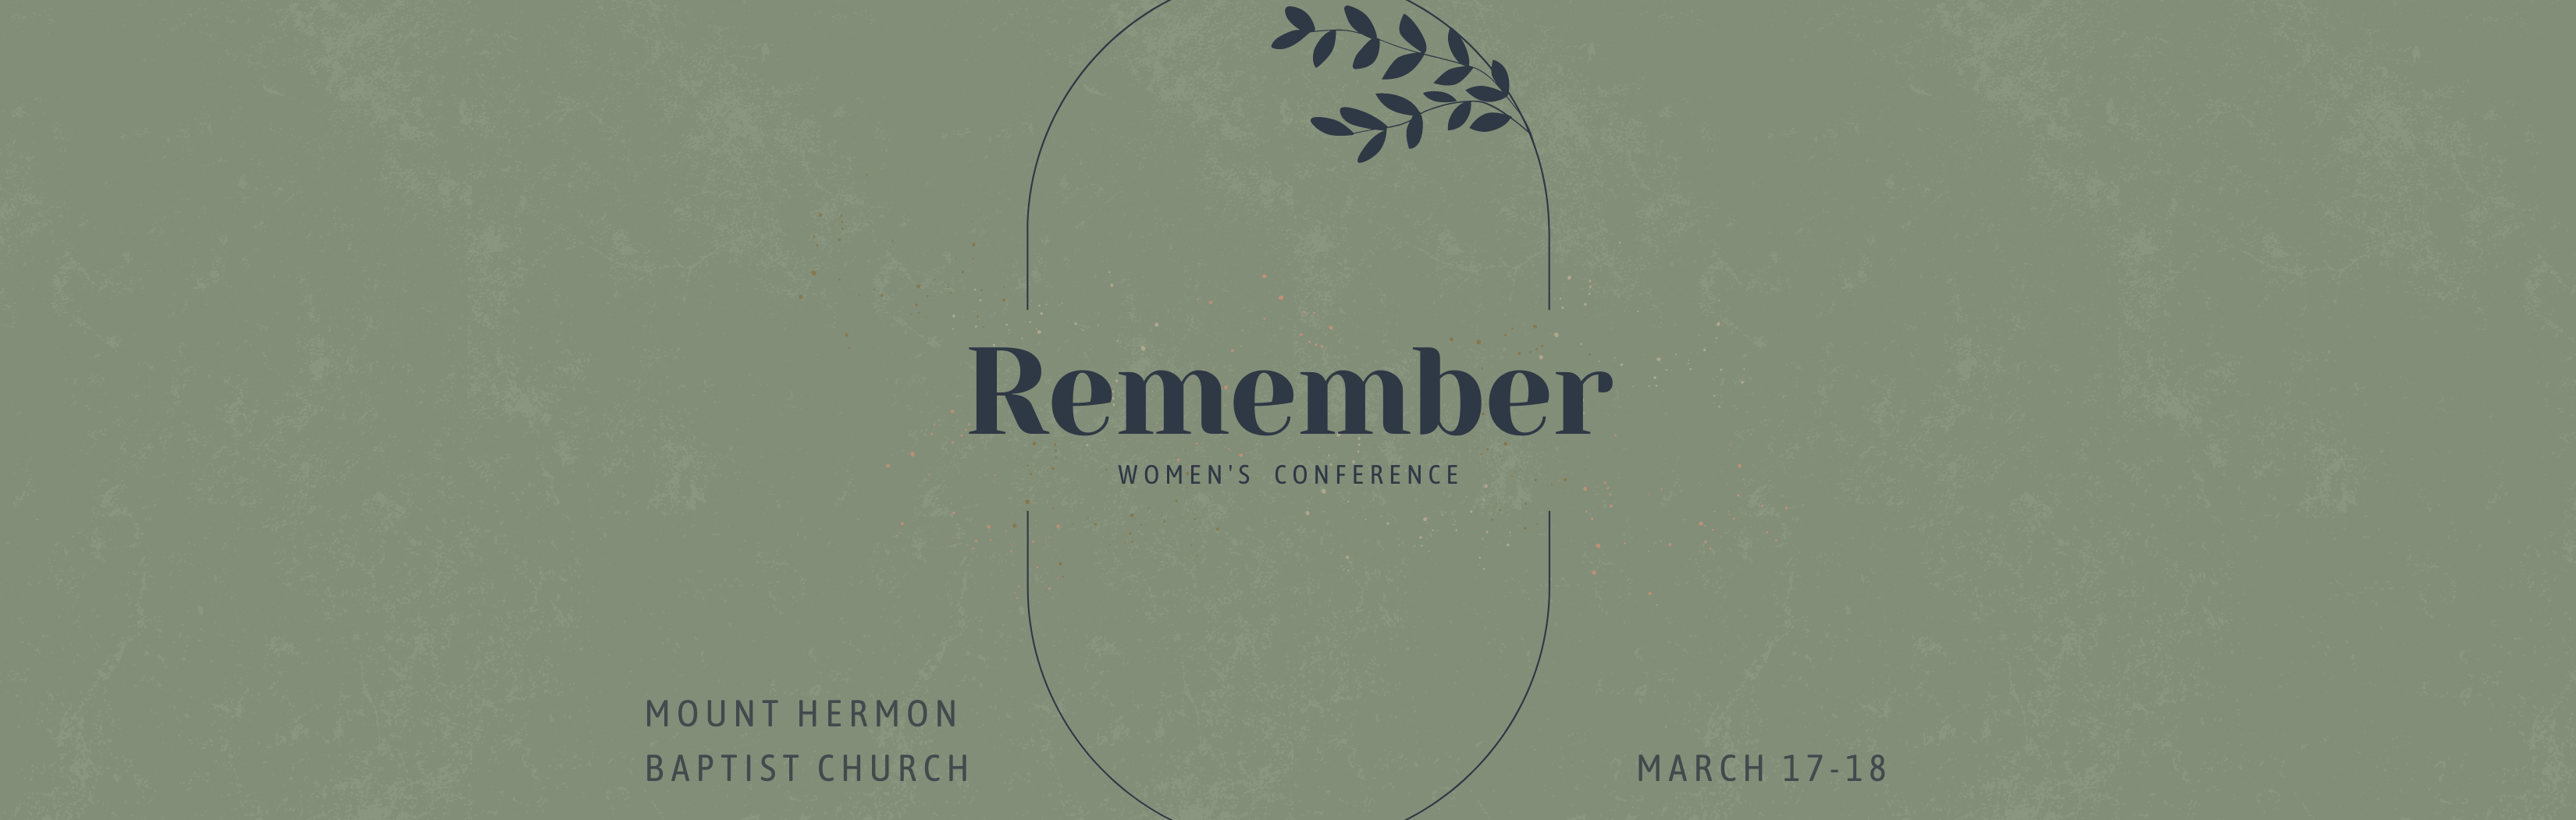 Website Slider Remember - Women's Conference Eventbrite (3300 × 1051 px) (3).png